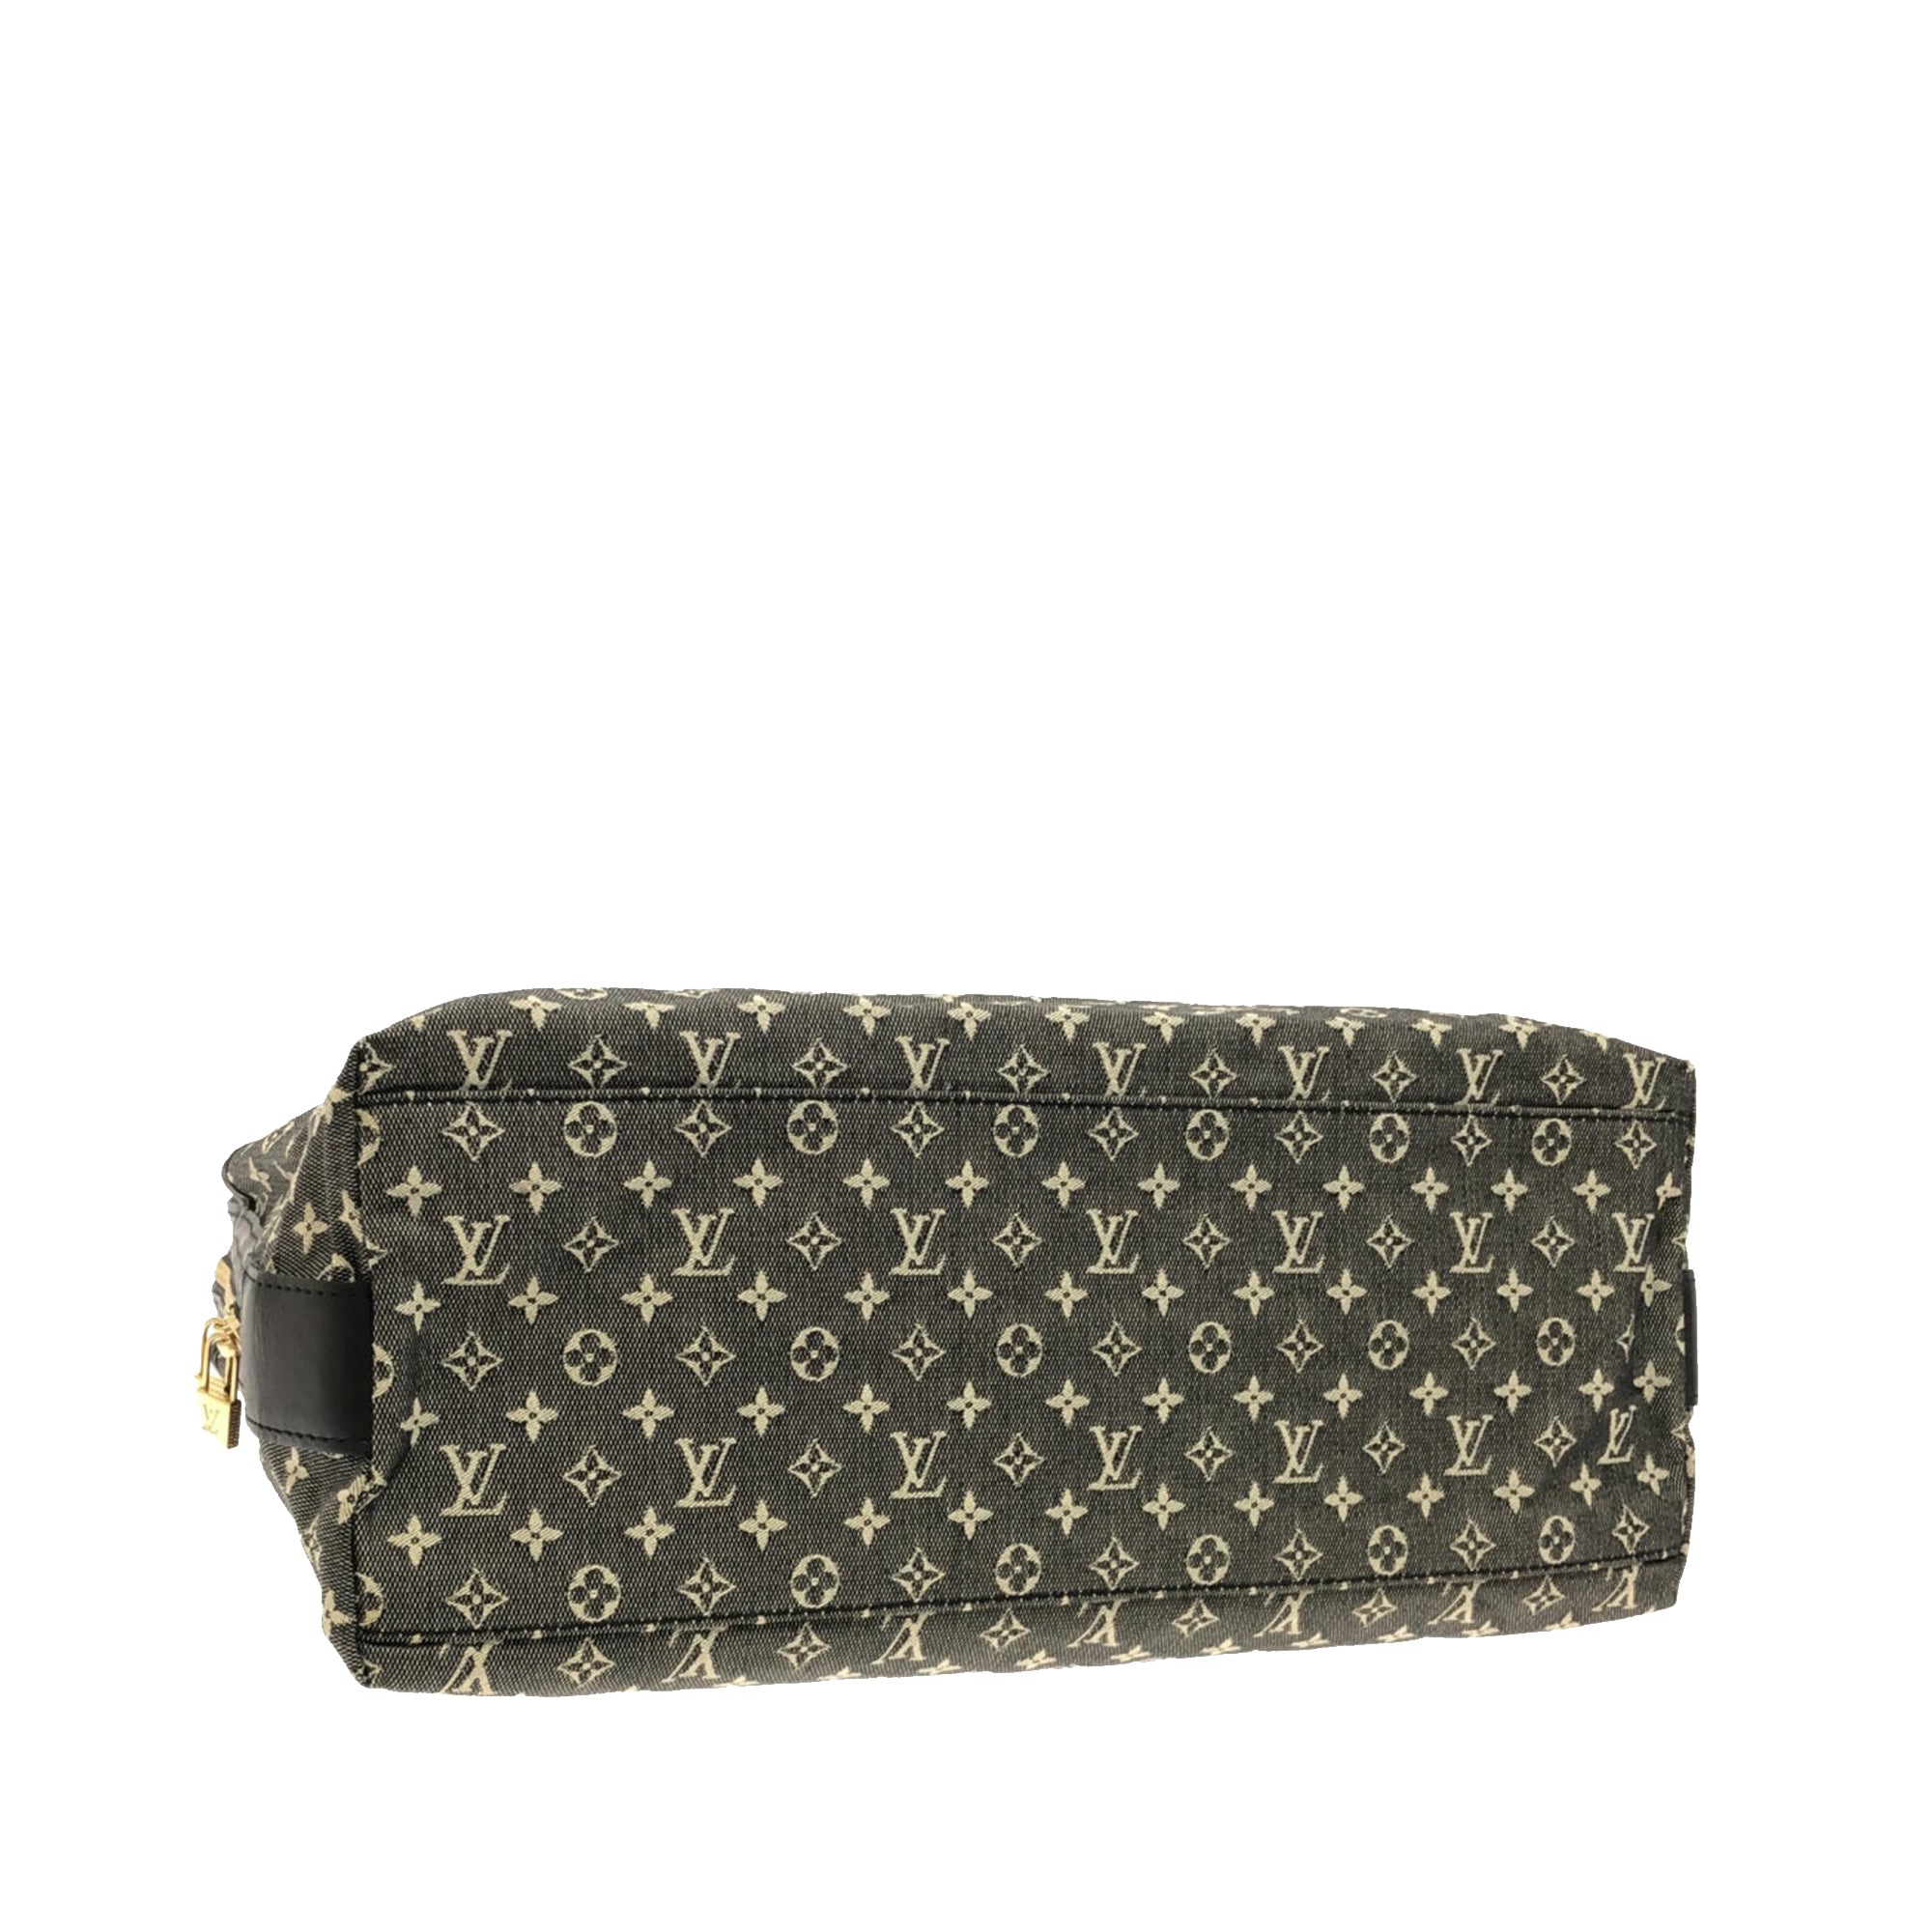 Louis Vuitton Monogram Mini Lin Cabas Mary Kate - ShopStyle Satchels & Top  Handle Bags